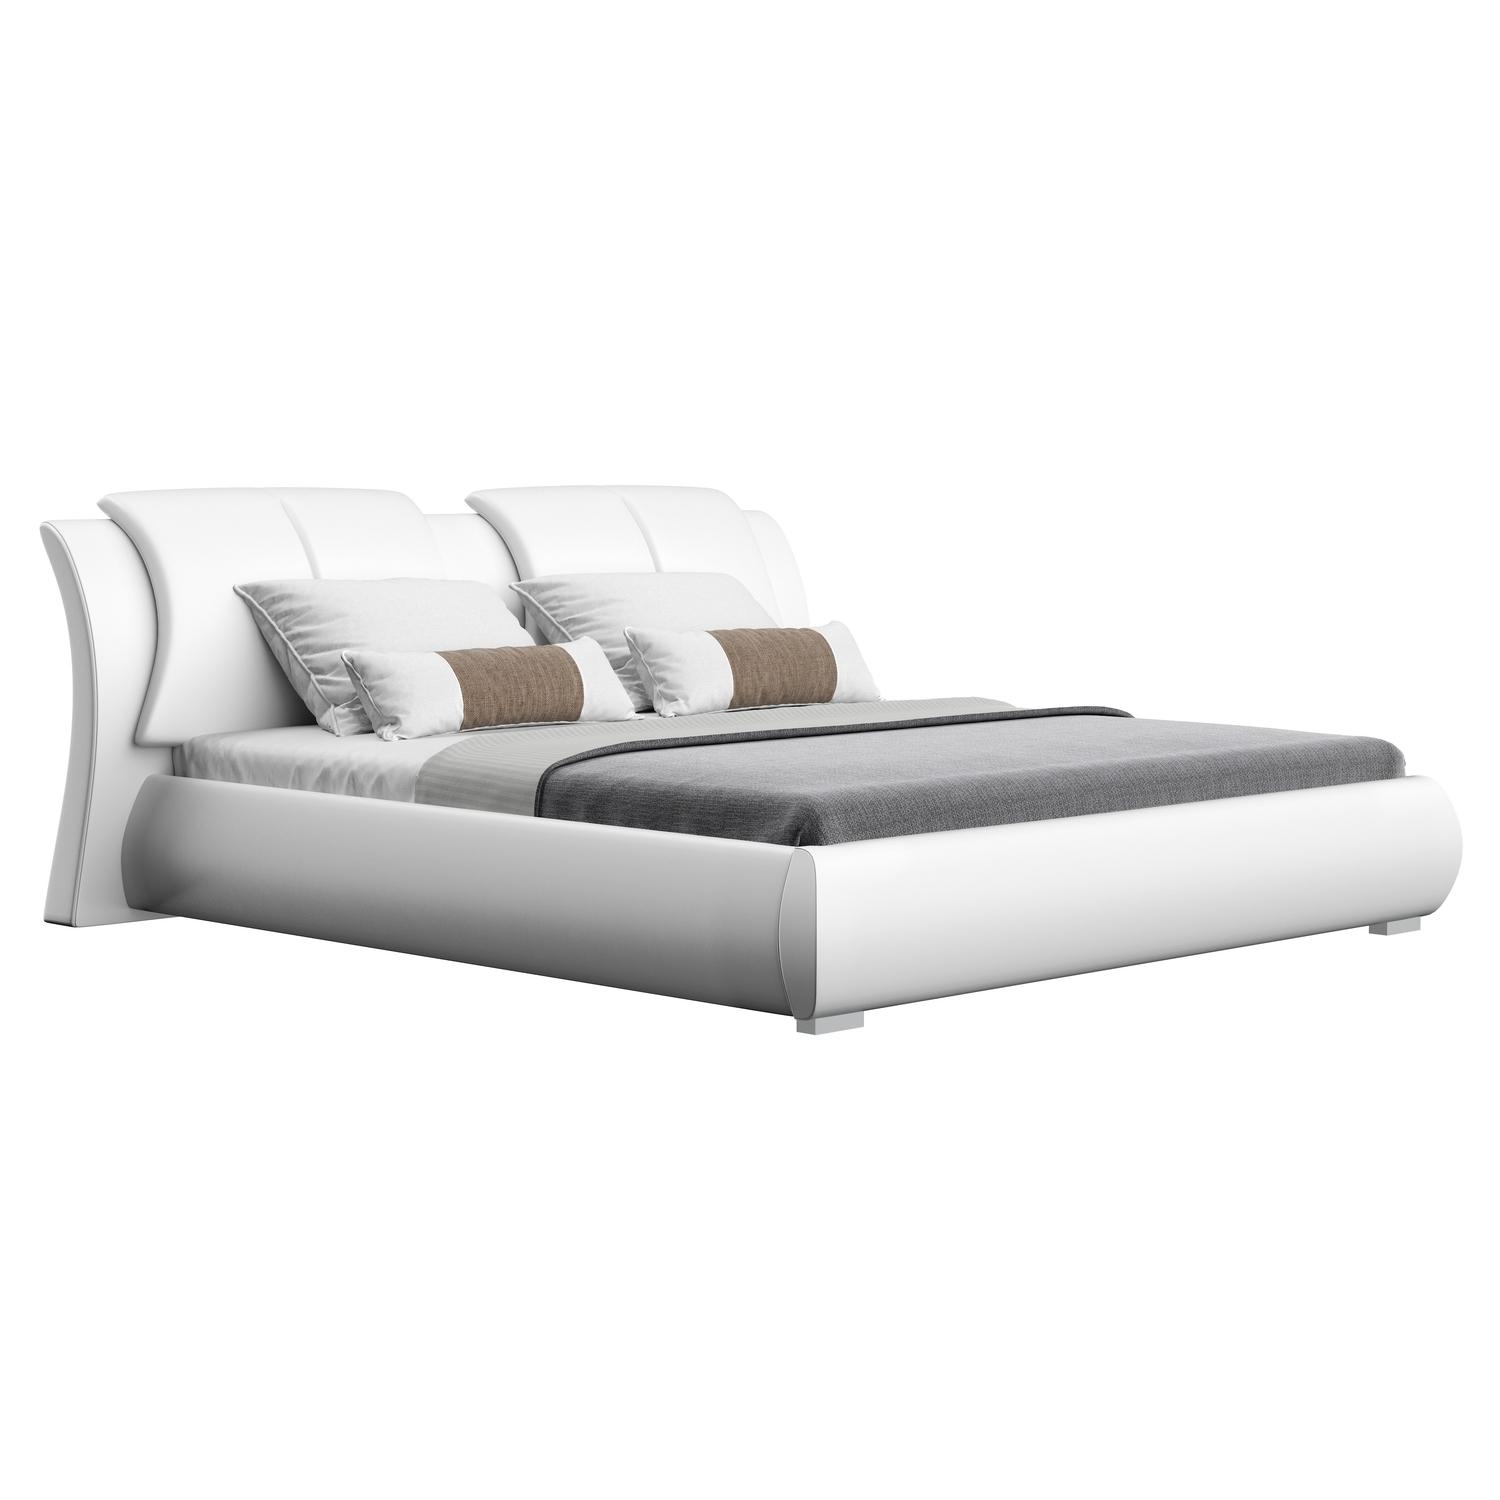 Global Furniture USA 8269 Platform Bed